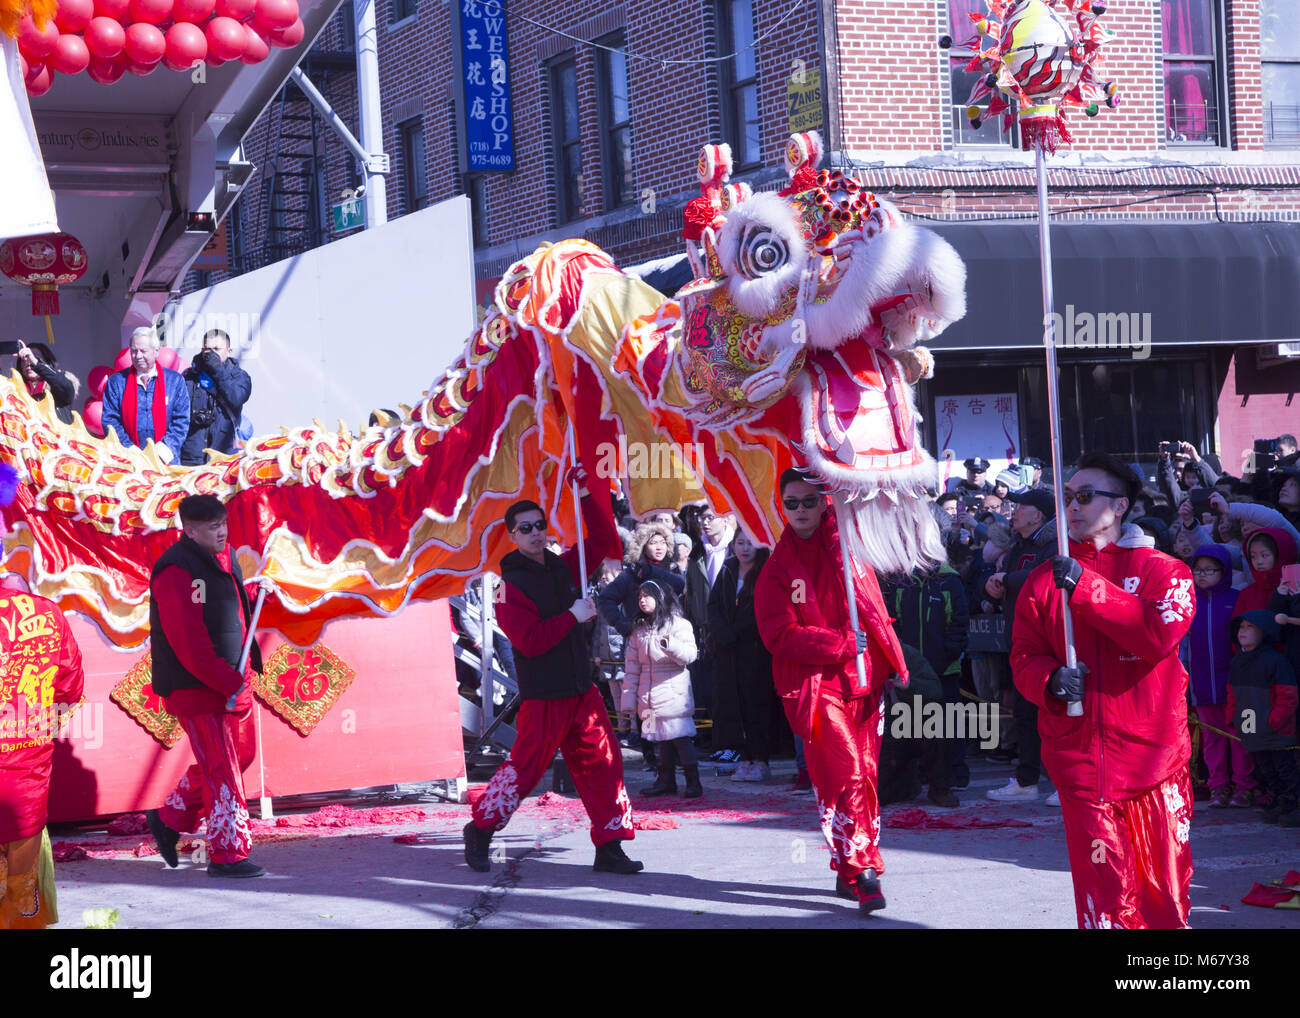 Le lion et dragon, les danseurs sont nombreux à sortir au Nouvel An chinois autour de Chinatown dans le quartier de Sunset Park, Brooklyn, New York. Banque D'Images